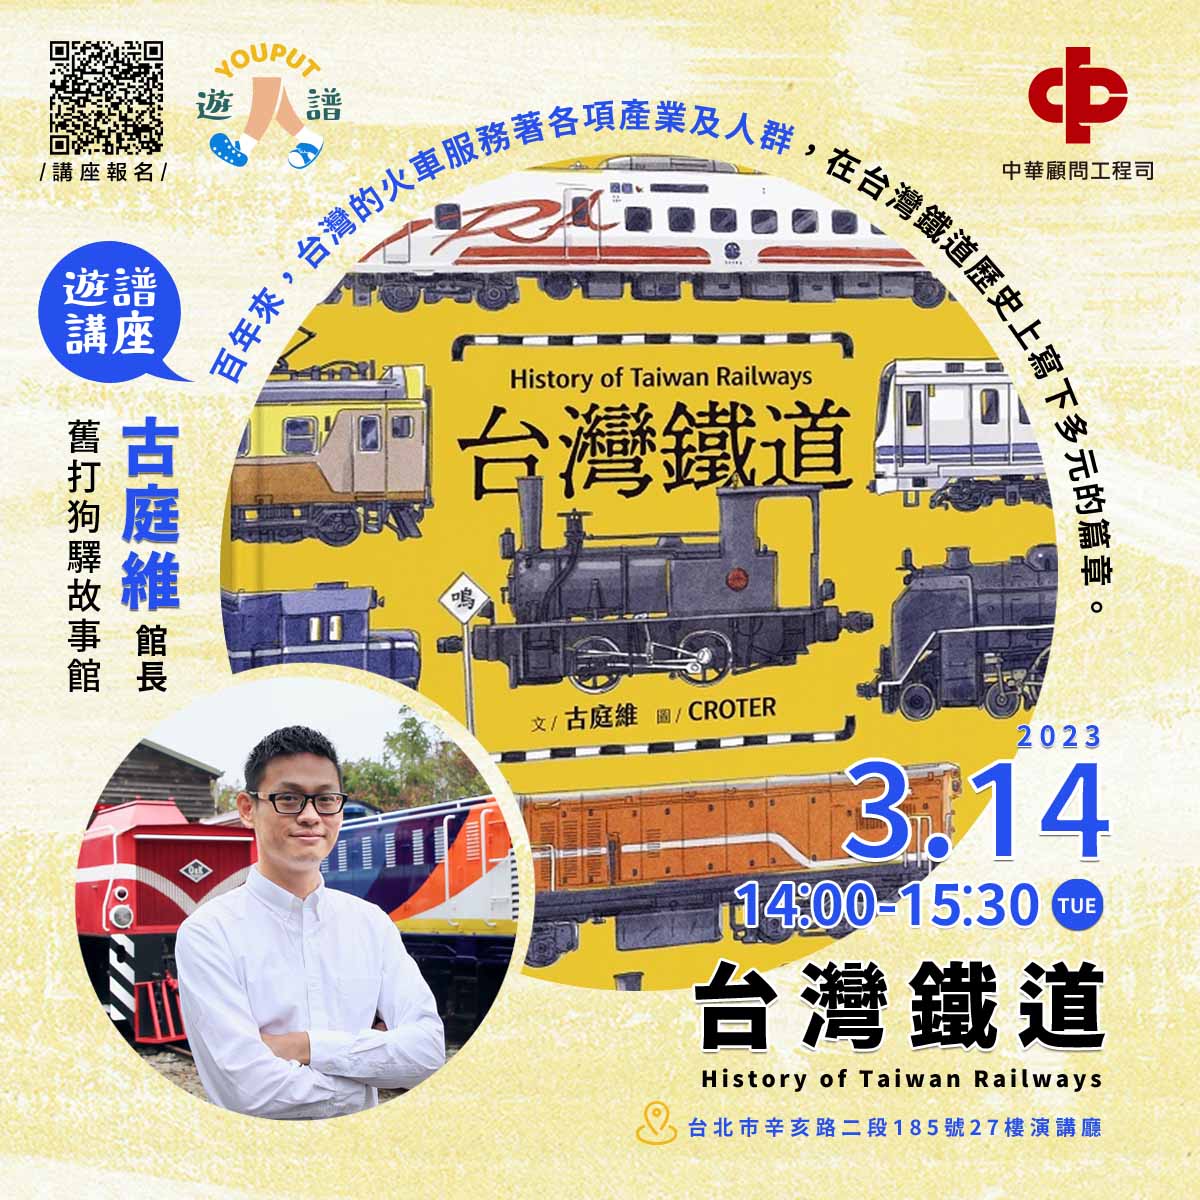 百年來，各式各樣、大大小小的火車，行駛在不同軌距的鐵道上，有的風馳電掣，有的緩緩行進，服務著台灣的各項產業及人群，在台灣的鐵道歷史上寫下多元多變的篇章。